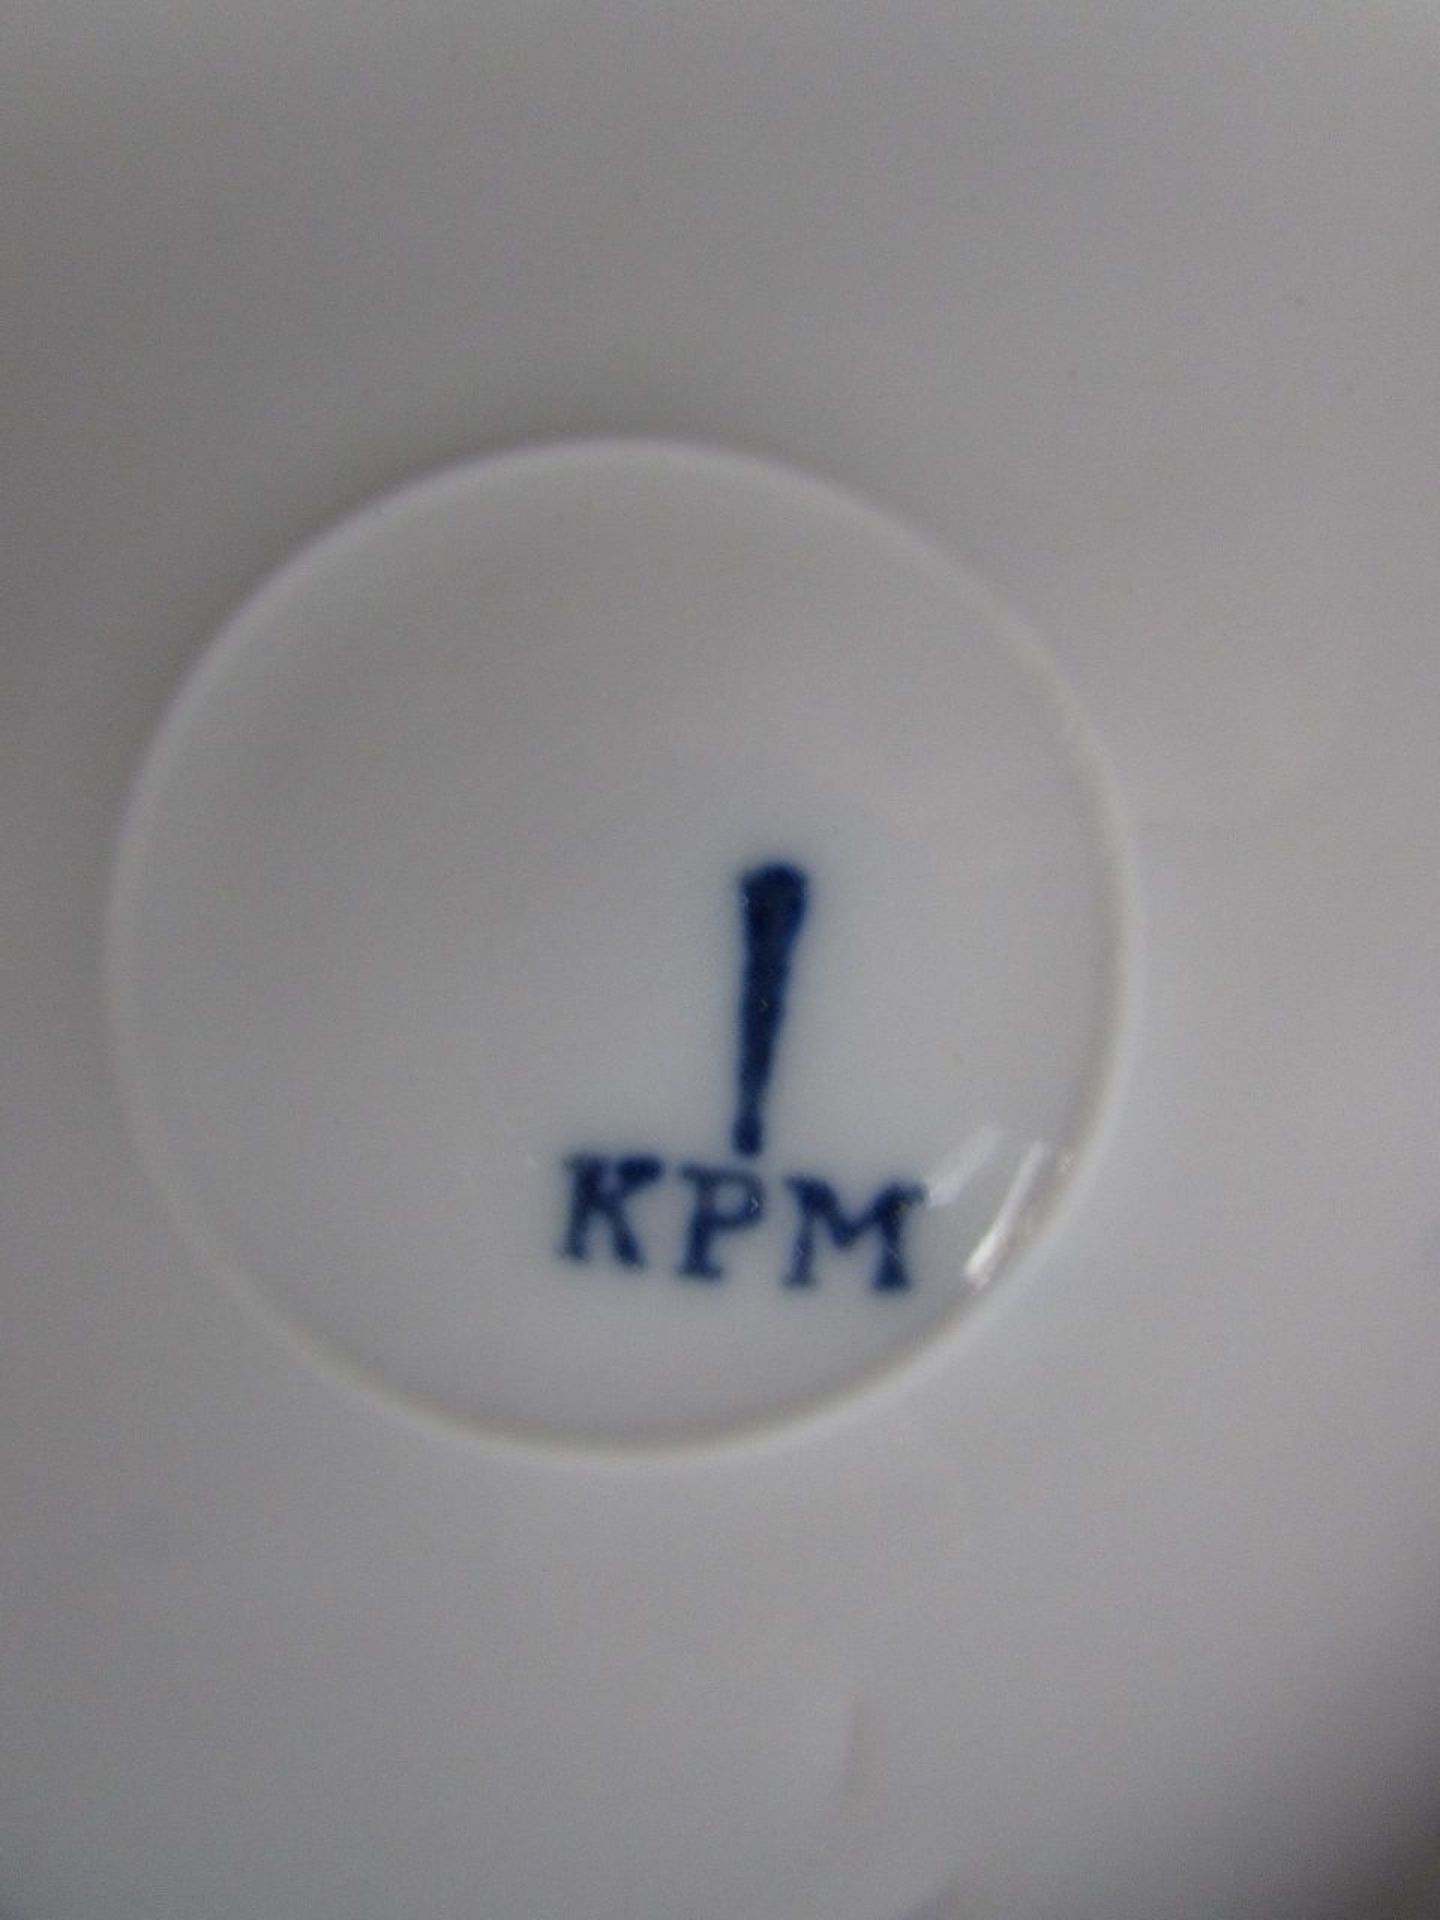 Porzellanteller, KPM Zeptermarke, 26cm Durchmesser, gemarkt - Bild 2 aus 2